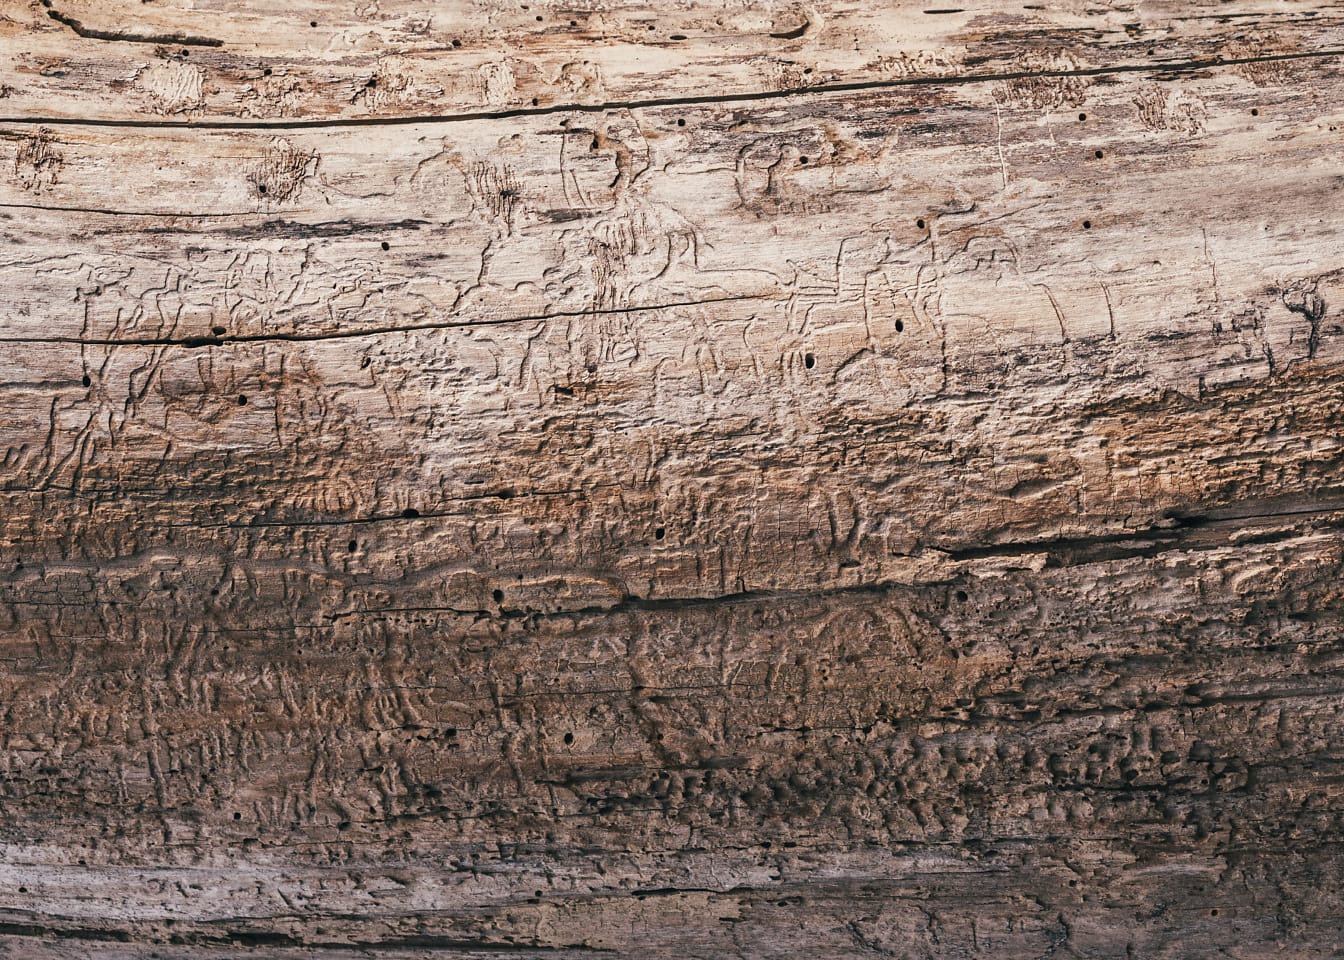 Tekstur af lysebrunt træ uden bark med træormmærker